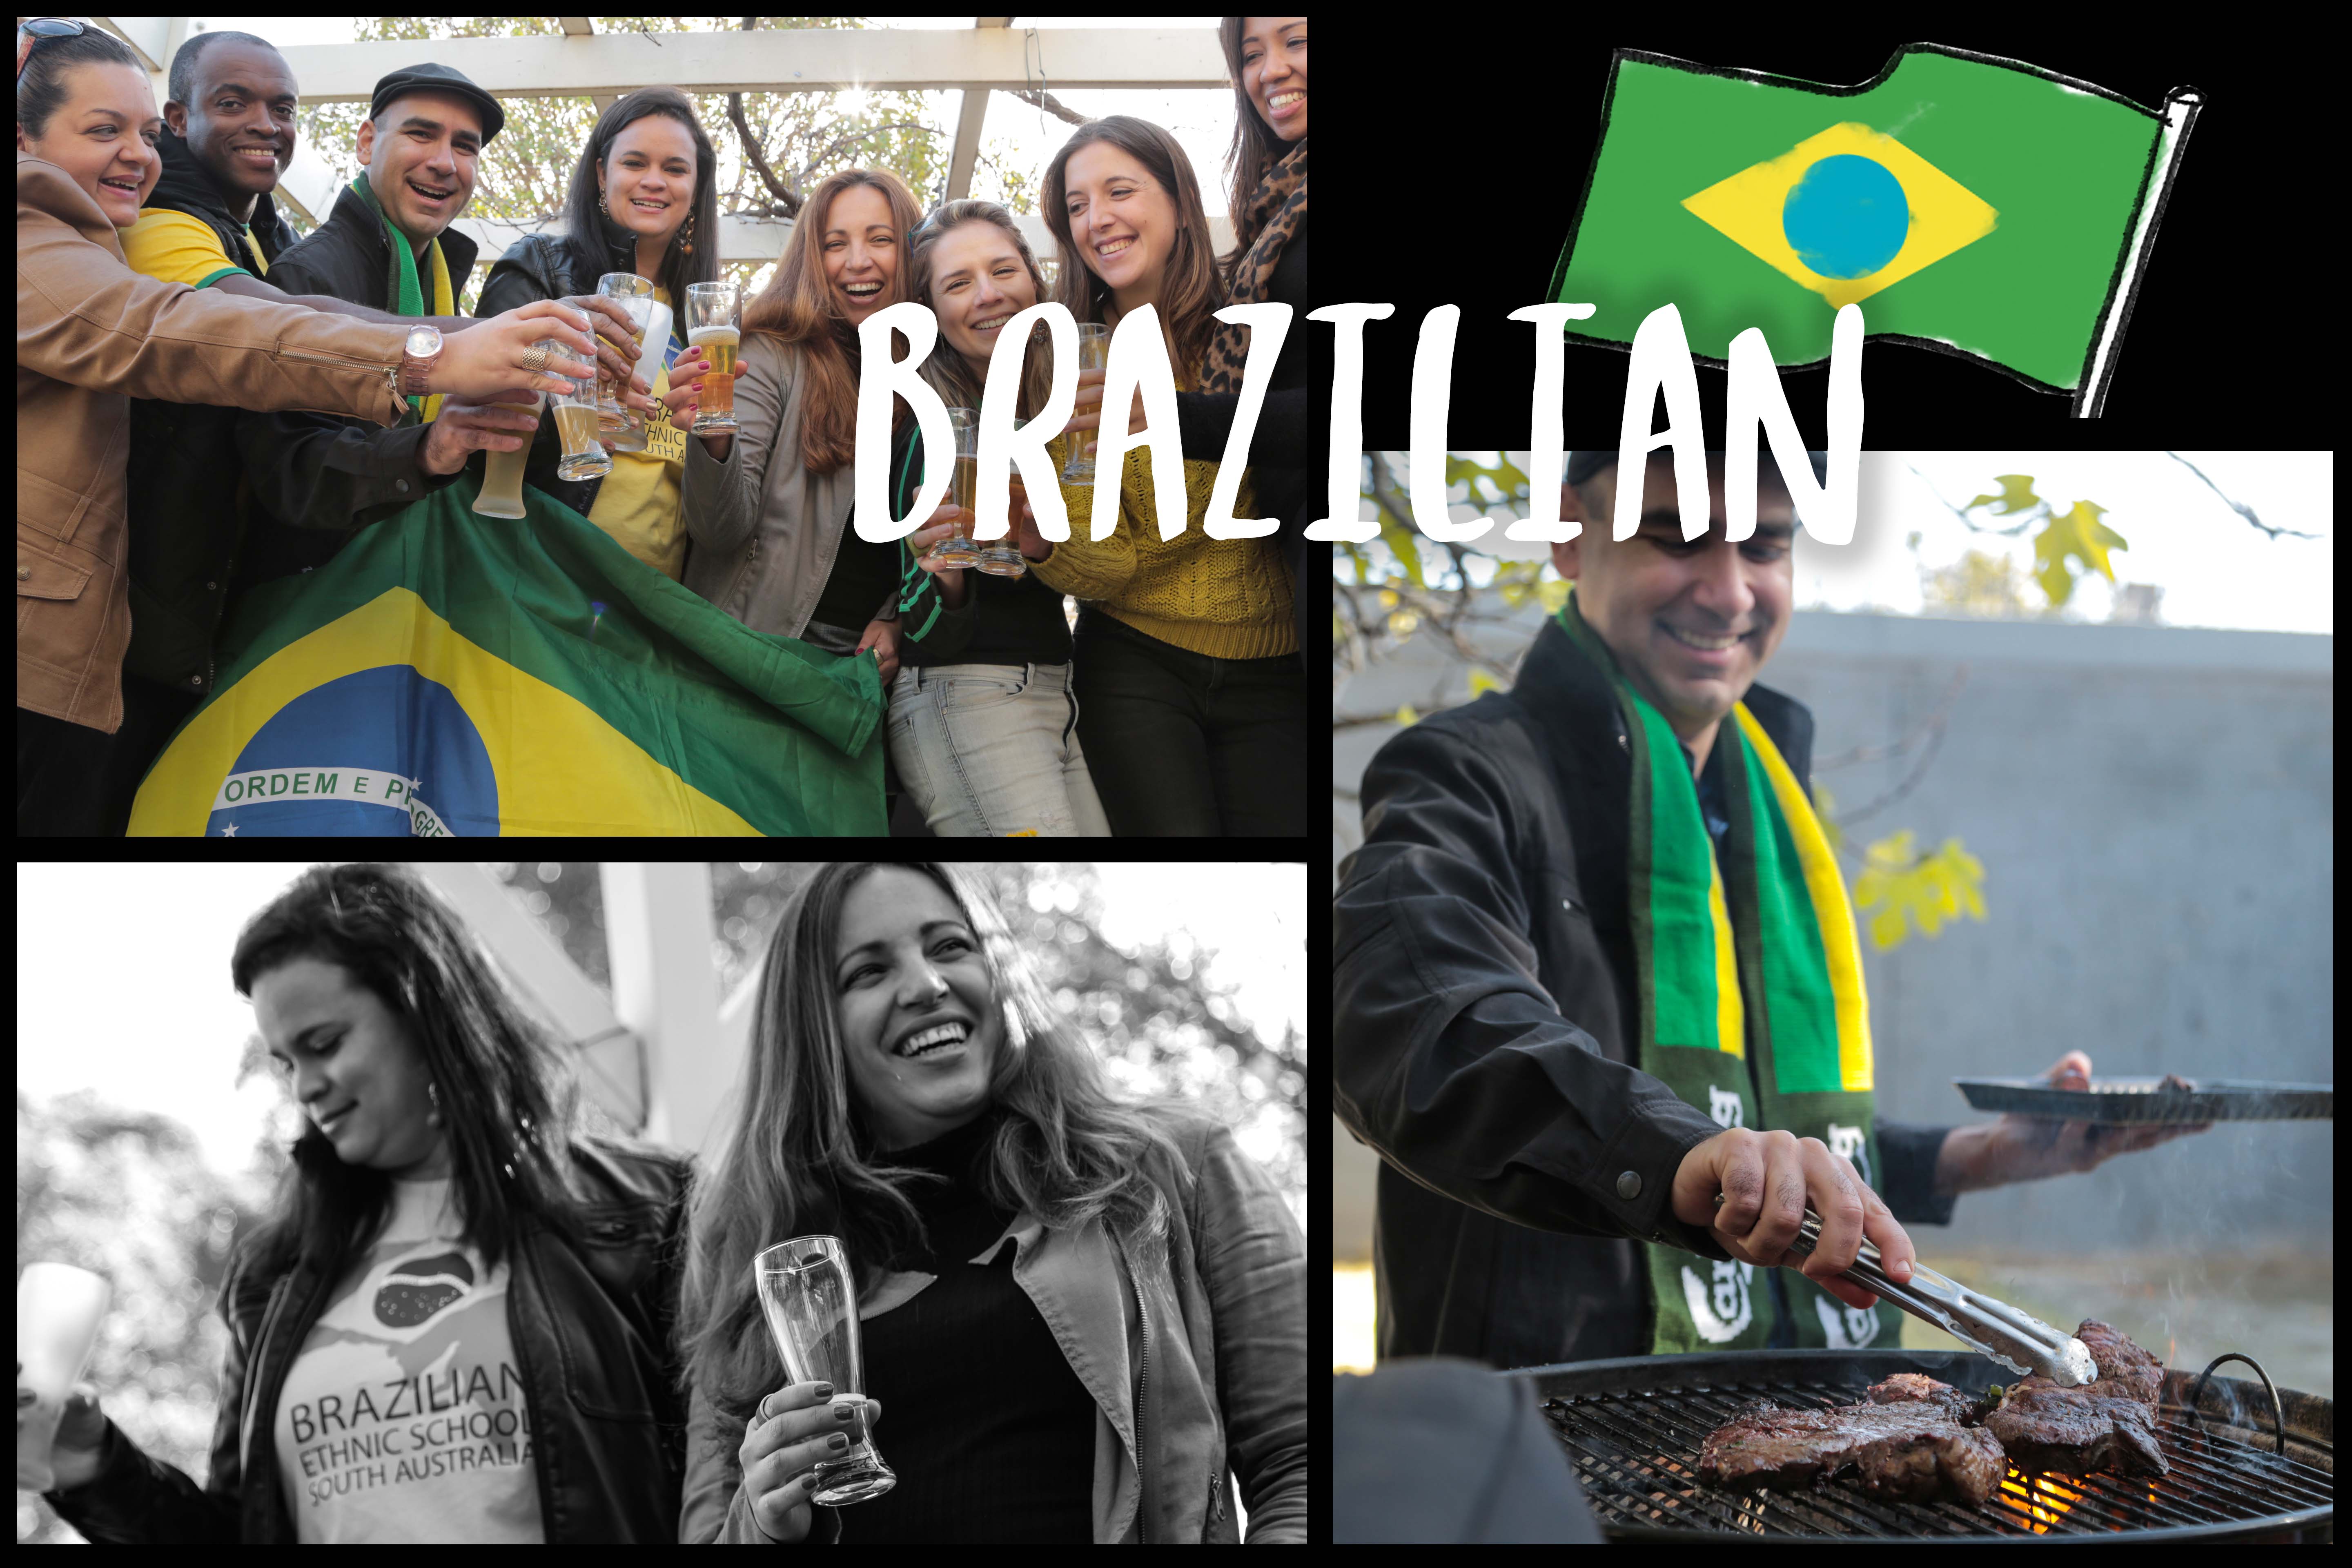 Brazilian cultural collage